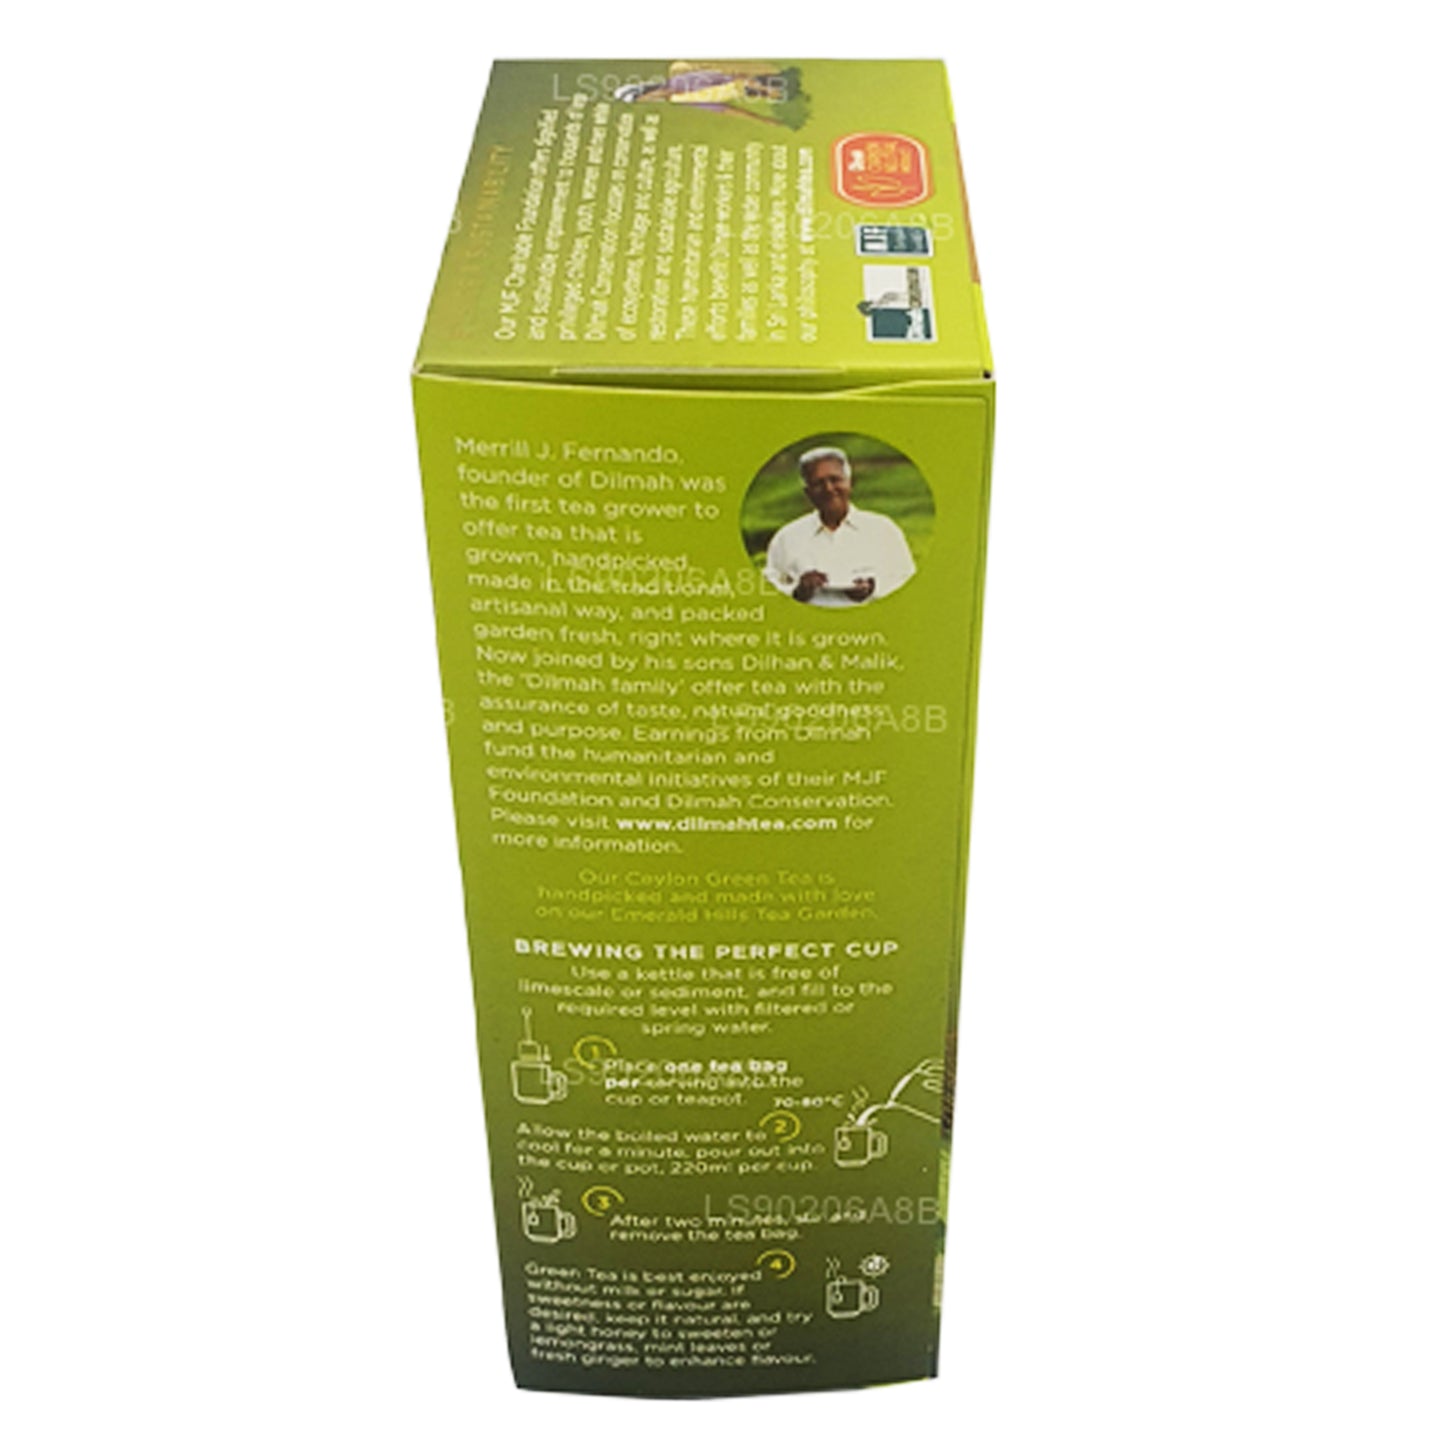 Dilmah Pure Ceylon Grüntee mit Zitronengras-Tee (40 g) 20 Teebeutel